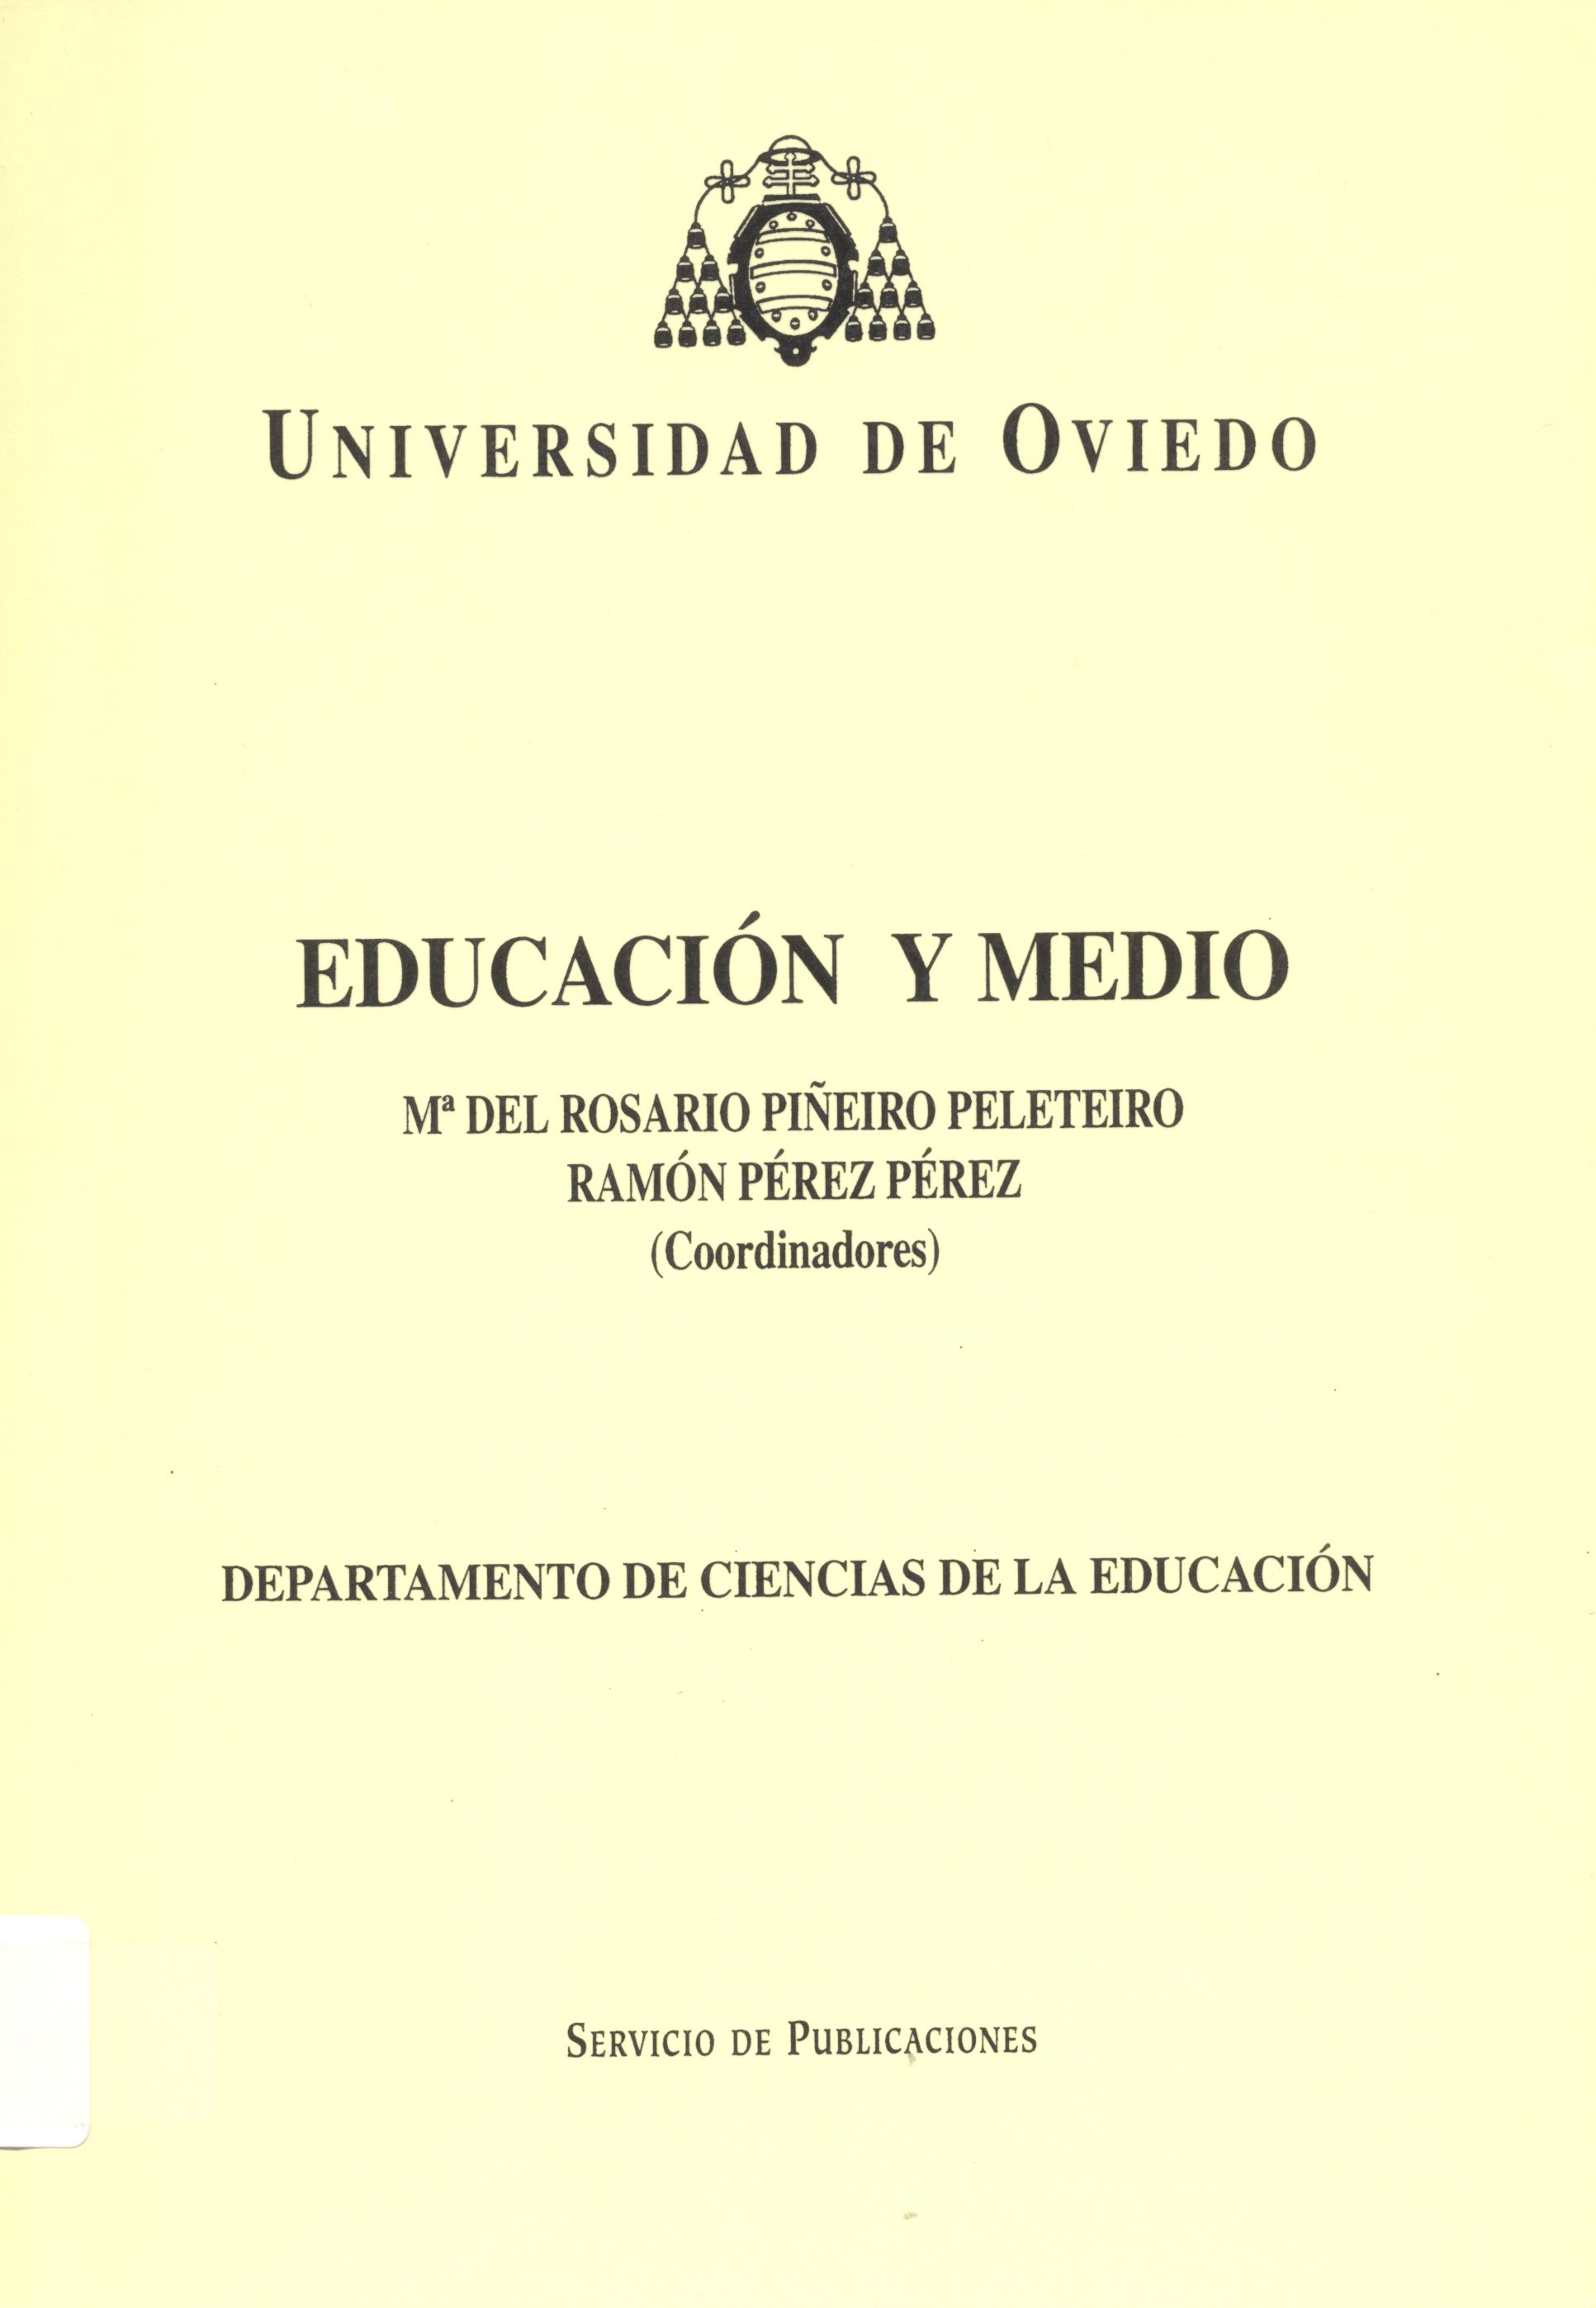 Imagen de portada del libro Educación y medio